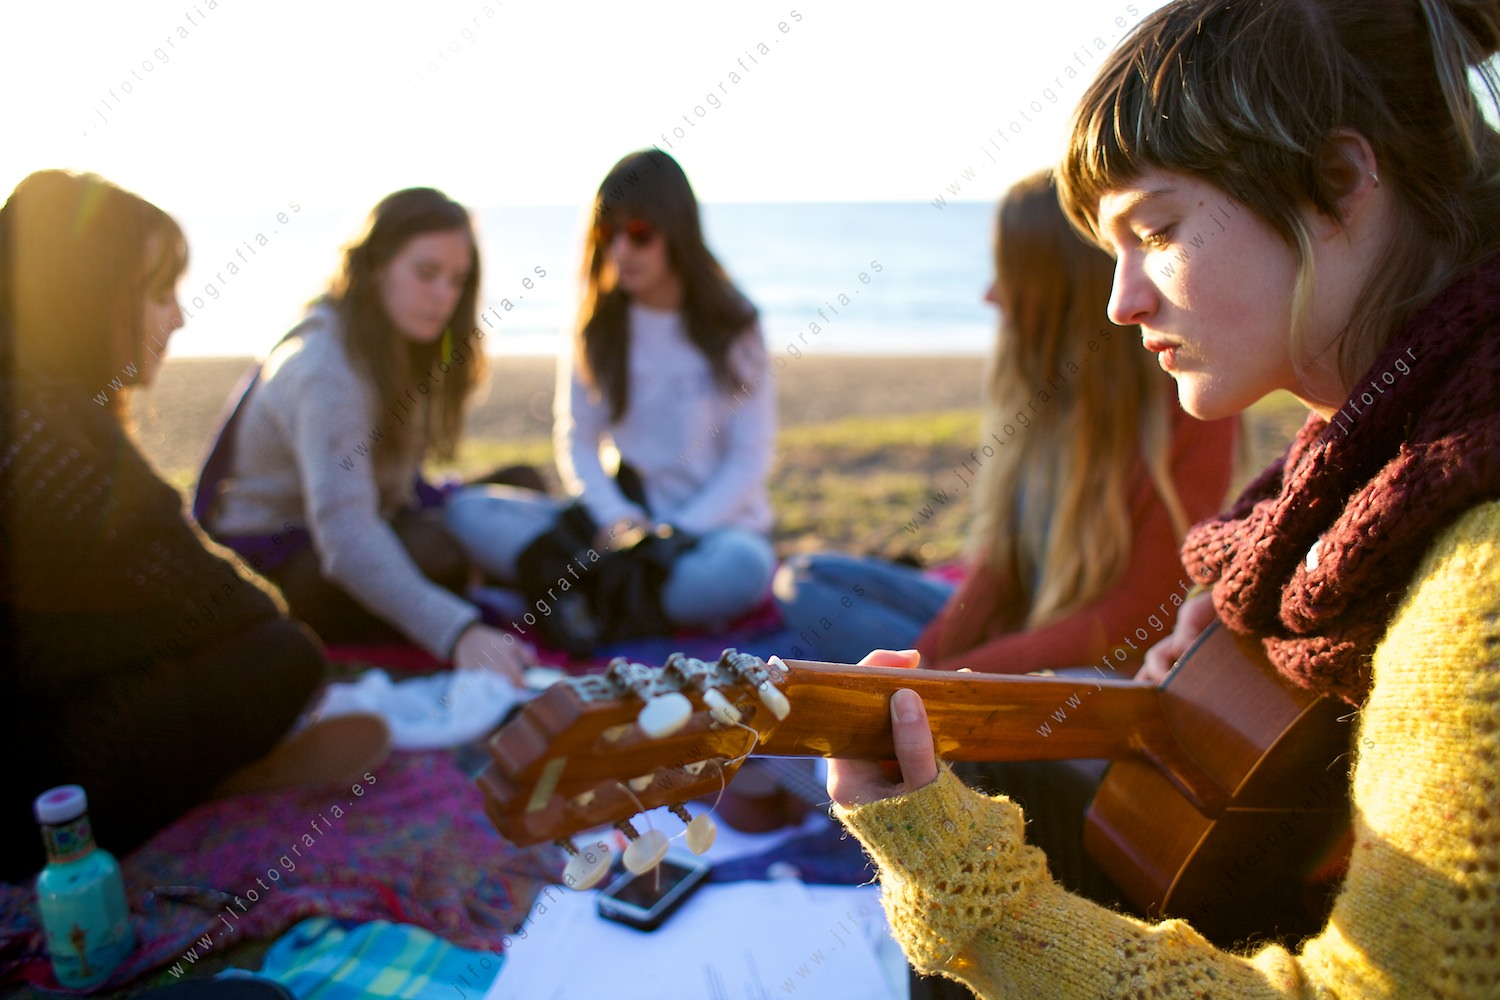 Plano de detalle de una joven tocando la guitarra junto al grupo de amigas, en la playa de Azkorri.